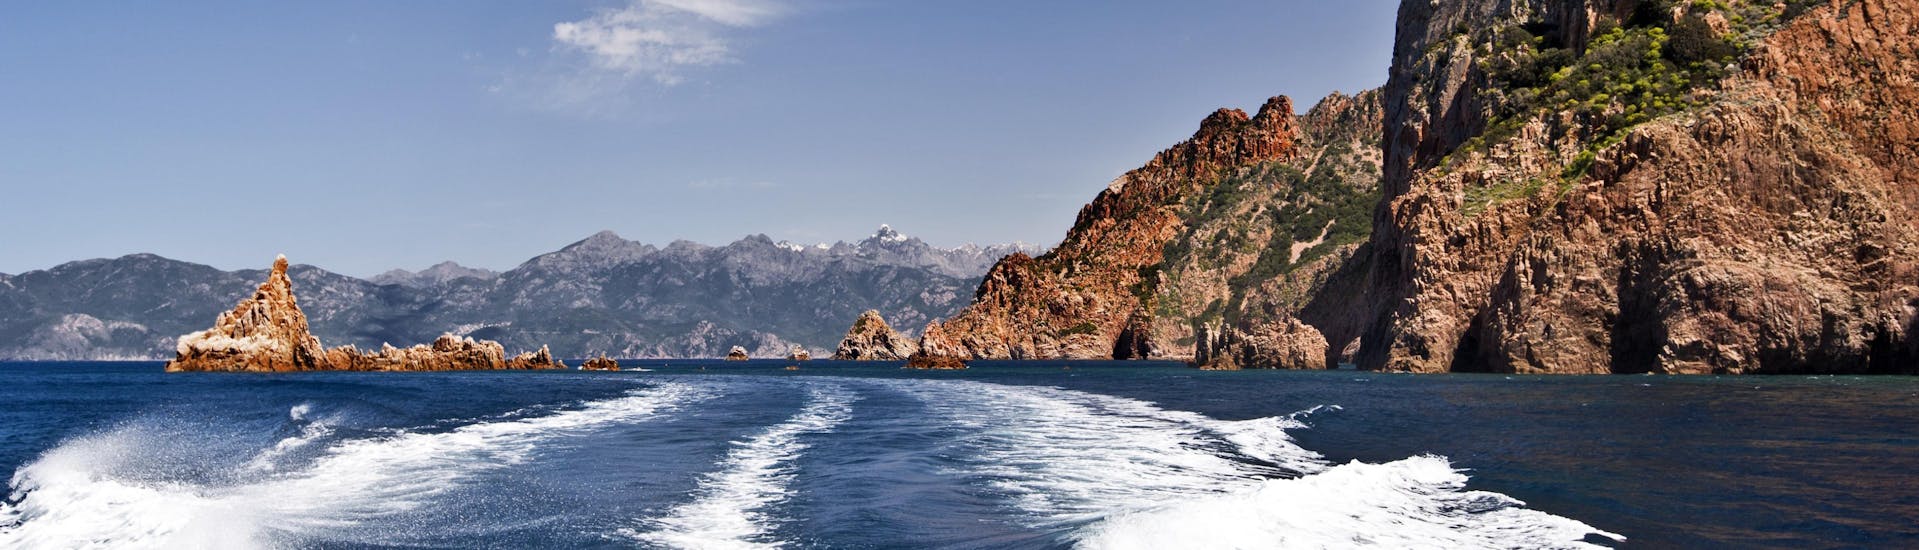 Vue de l'arrière d'un bateau lors d'une balade en bateau dans les impressionnantes Calanques de Piana, sur la côte ouest de la Corse.